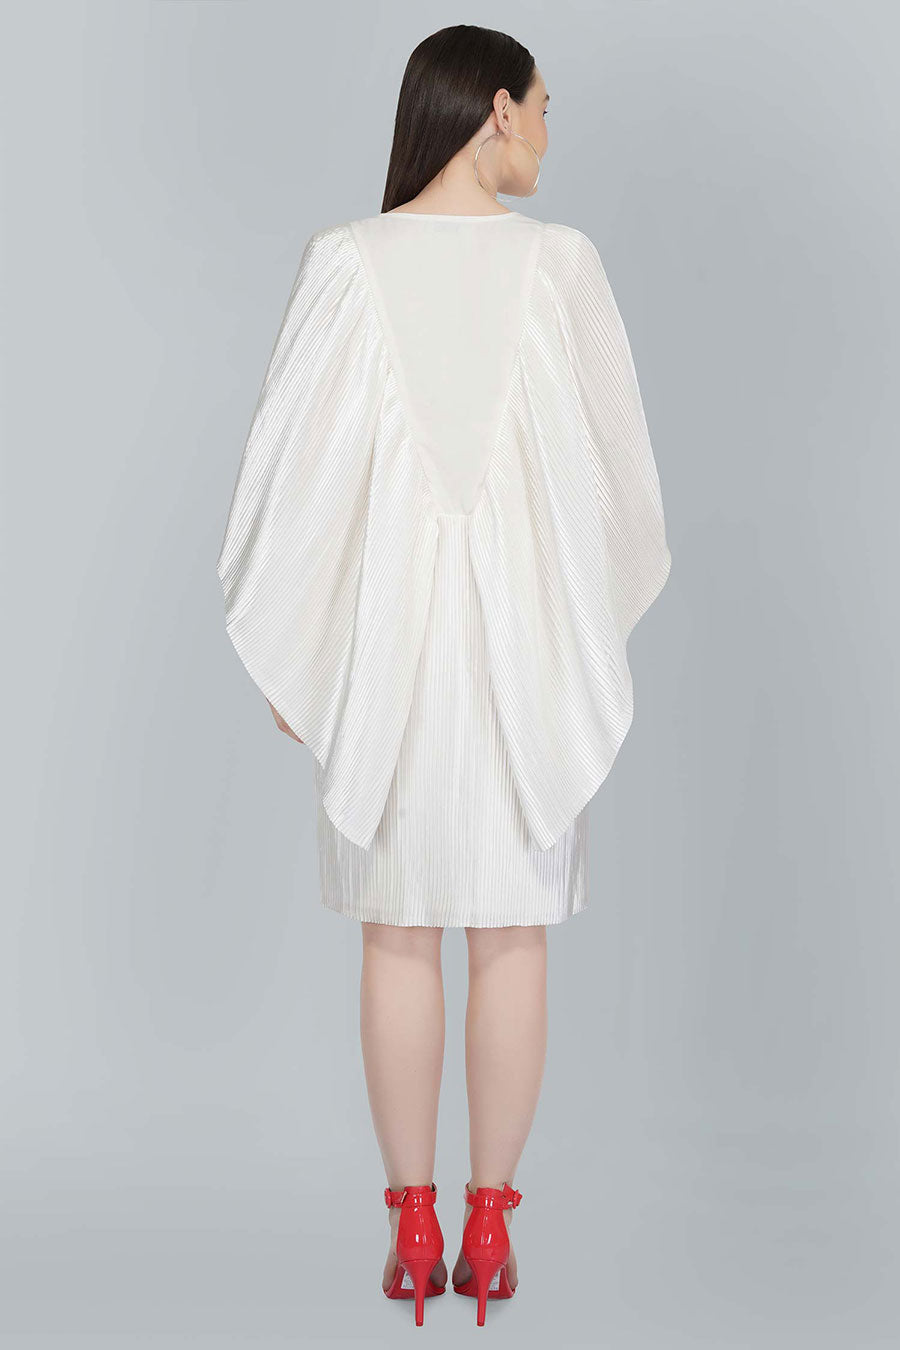 Flutter Sleeve White Satin Dress